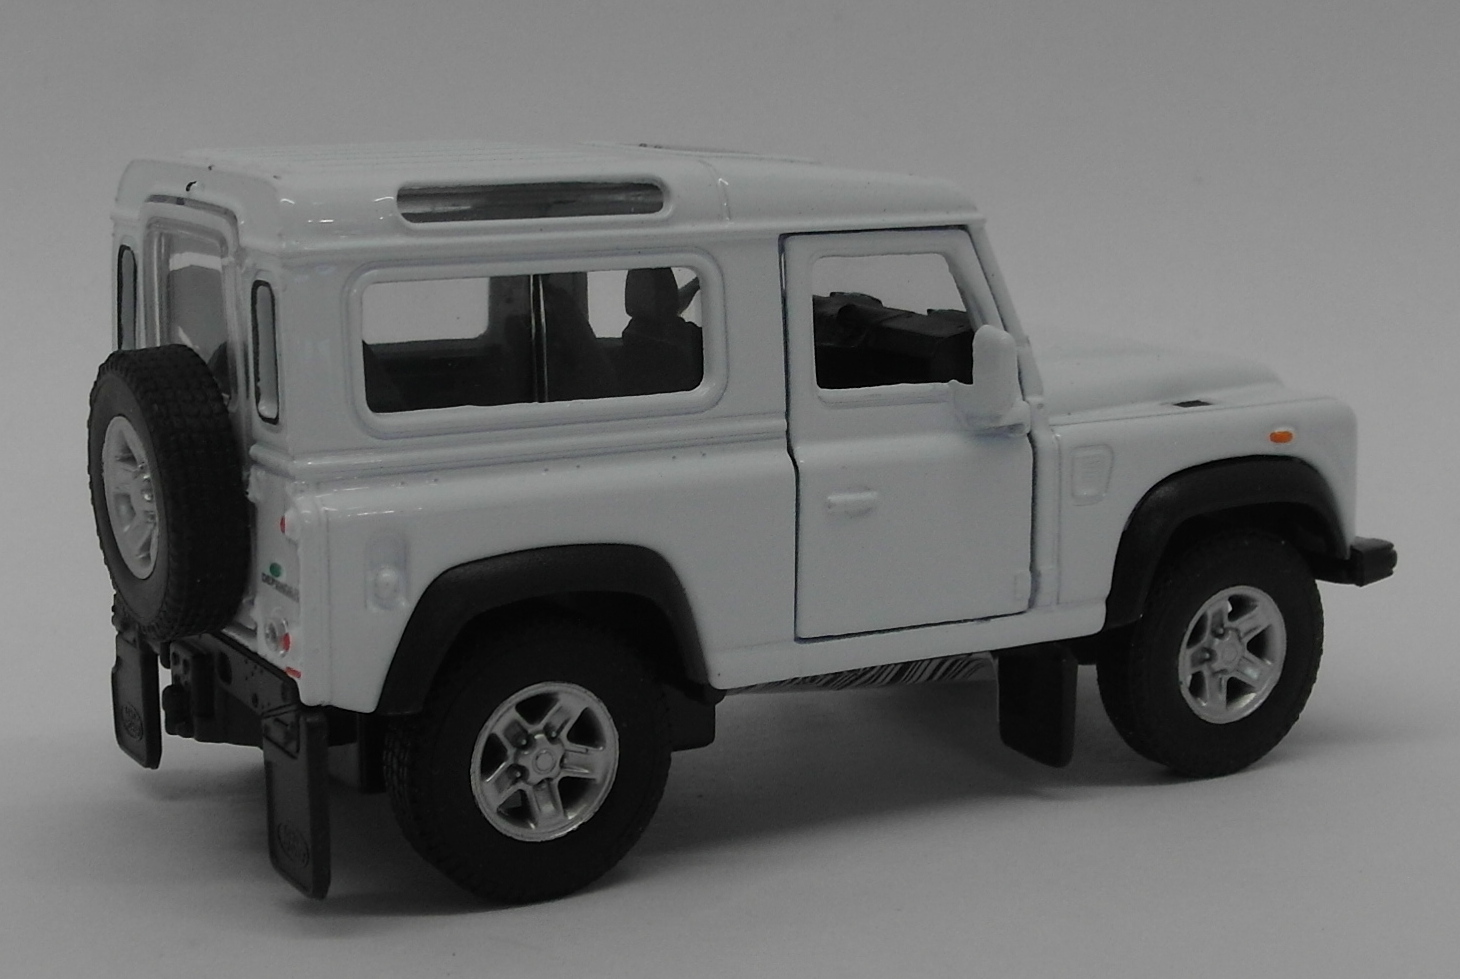 Land Rover Defender - White - Kinsmart Pull Back & Go Diecast Metal Model Car